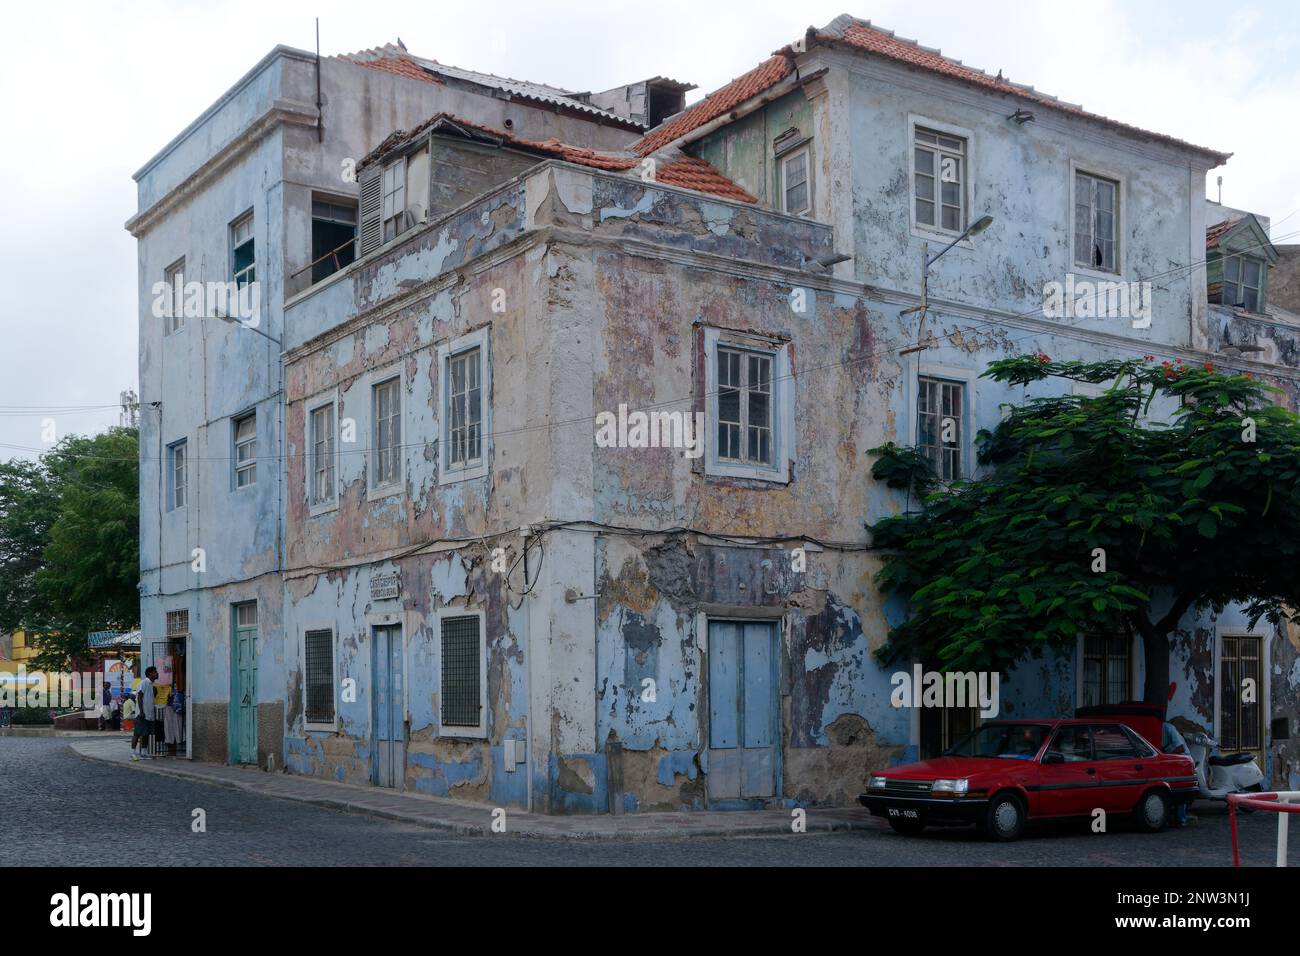 Ein altes Gebäude in Porto Grande, das dringend einer Instandhaltung bedarf. Zusätzliche Hütte auf der Veranda im dritten Stock. Muss dringend gestrichen werden. Stockfoto